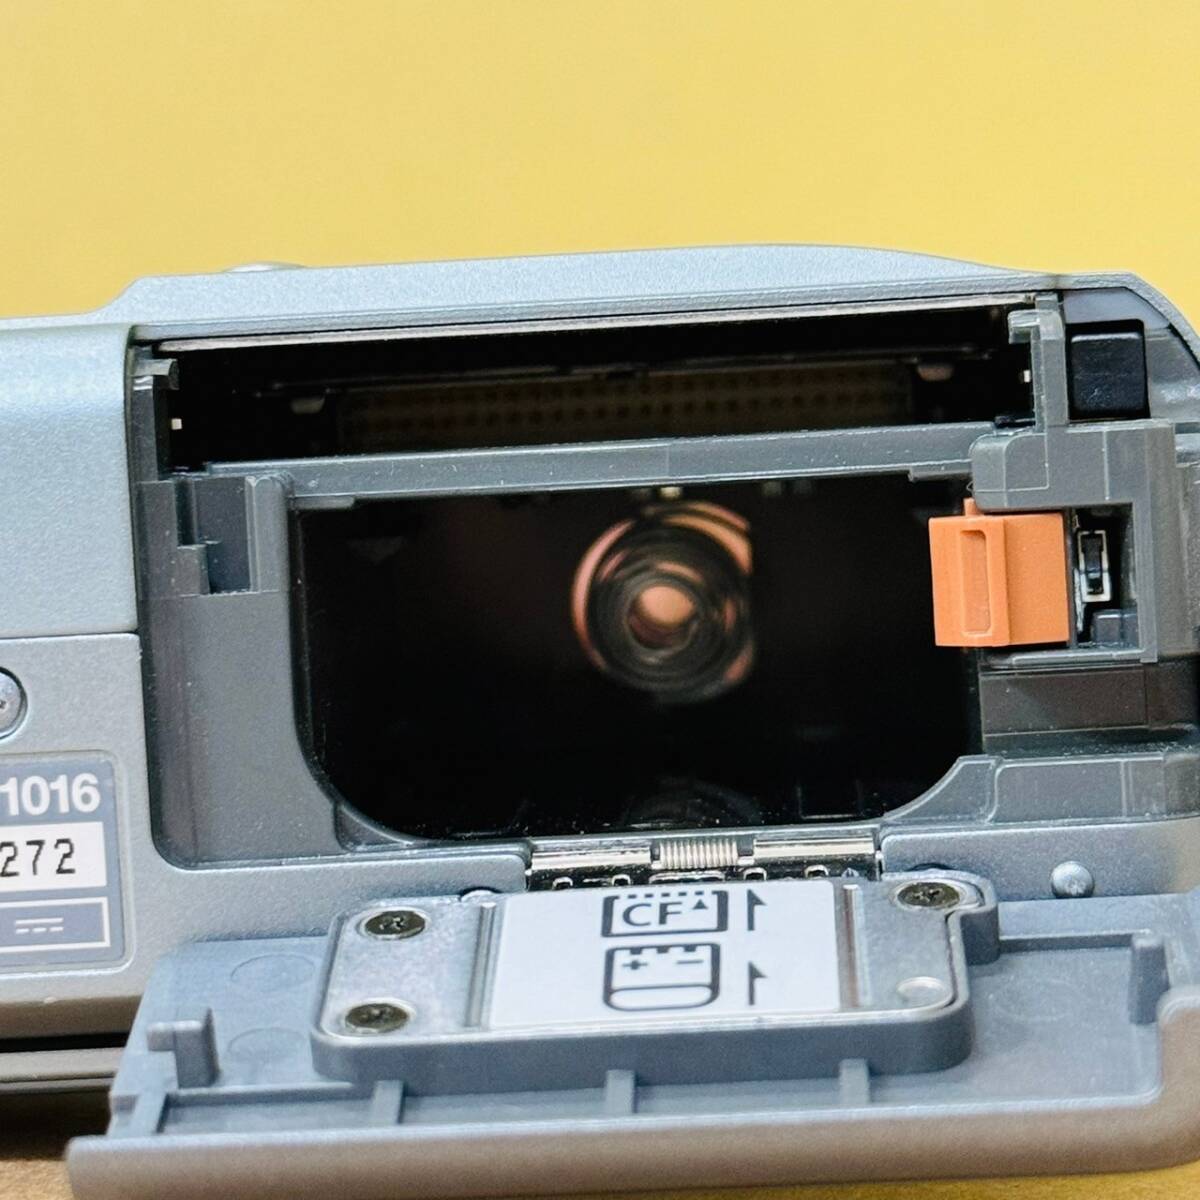 [GSA-297] Canon PowerShot S40 Junk ACK700 аккумулятор комплект цифровая камера цифровая камера Camera б/у хранение товар работоспособность не проверялась 